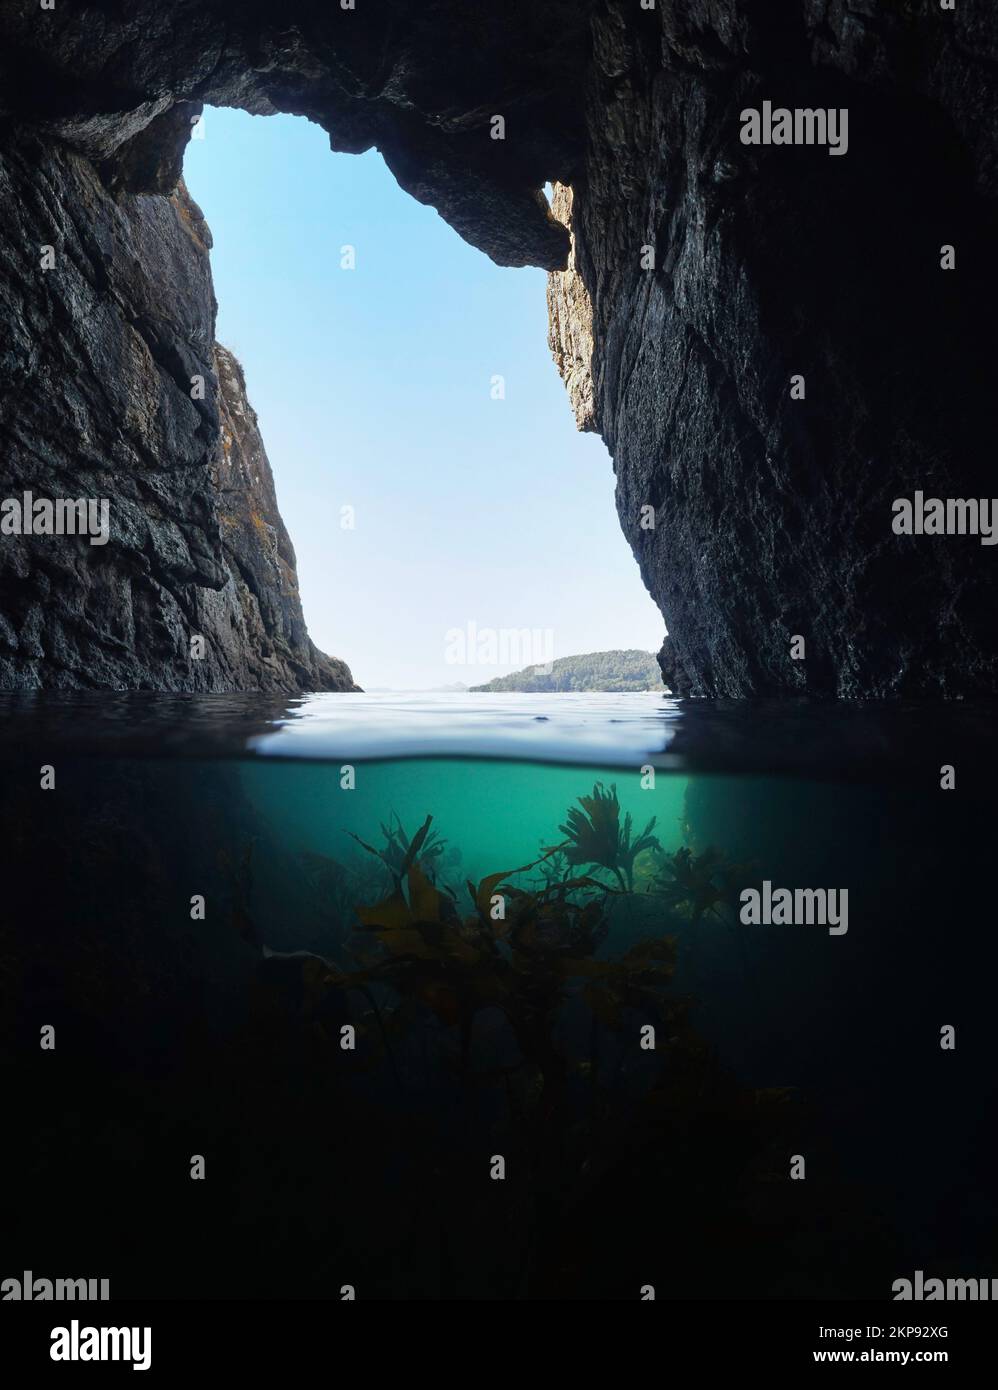 Höhle am Meer mit Seetang unter Wasser, Atlantik, Meereslandschaft über und unter der Wasseroberfläche, Spanien, Galicien, Rias Baixas Stockfoto